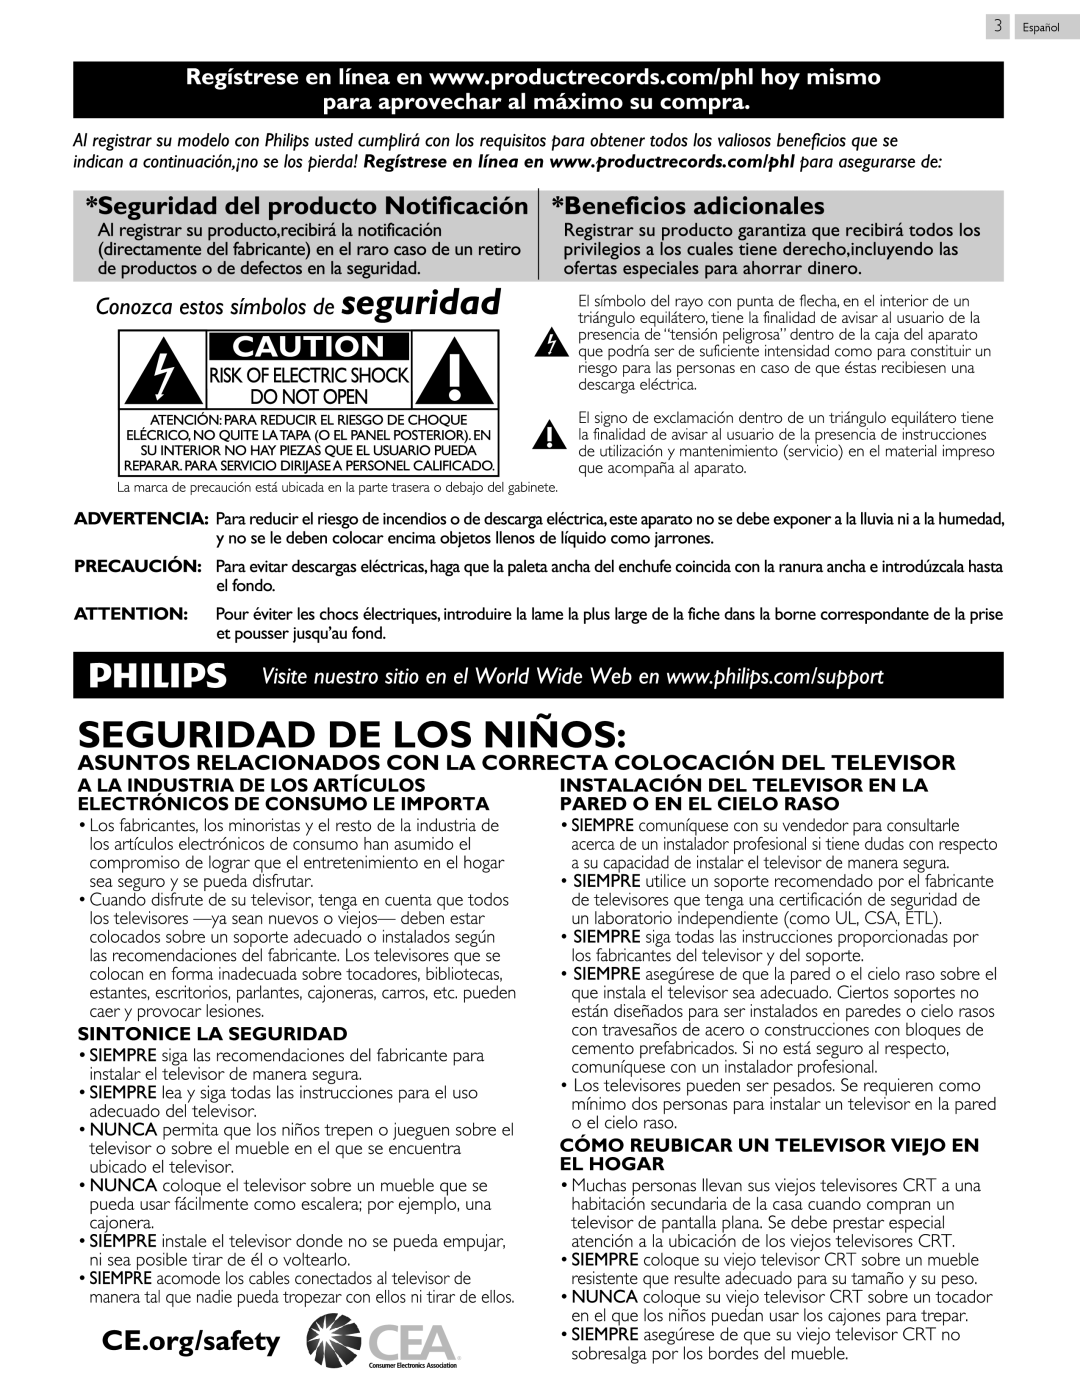 Philips 40PFL4709 Risk Of Electric Shock Do Not Open, CE.org/safety, producto Notificación, Seguridad de, la notificación 